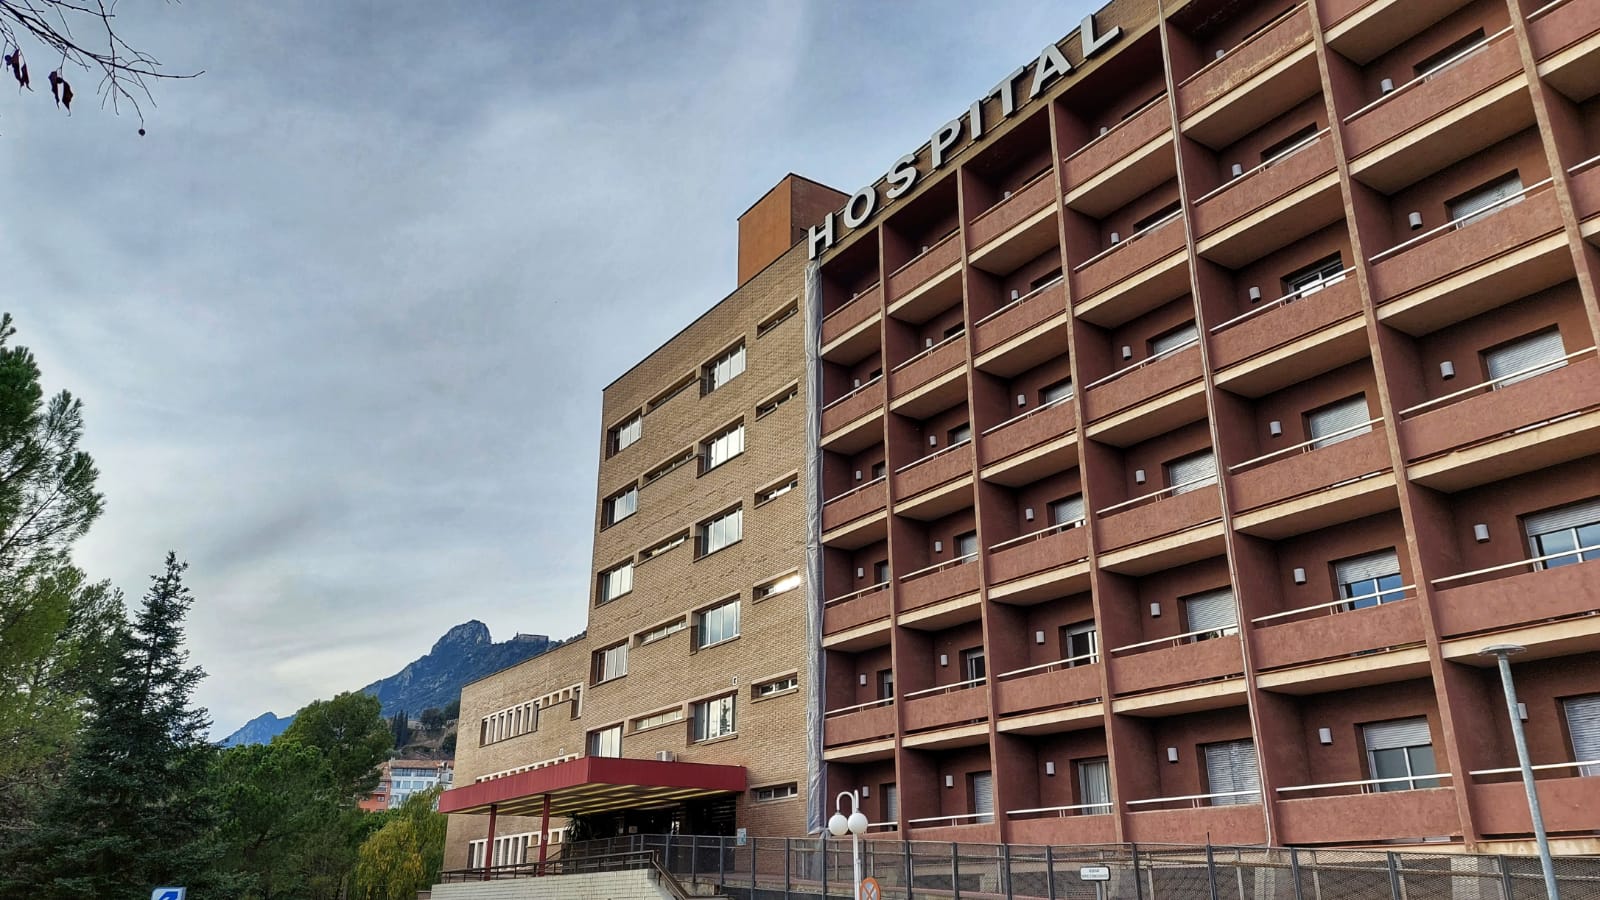 Berga licita l'arrendament de dues finques per ampliar l'aparcament públic de l'hospital i el Barri Vell